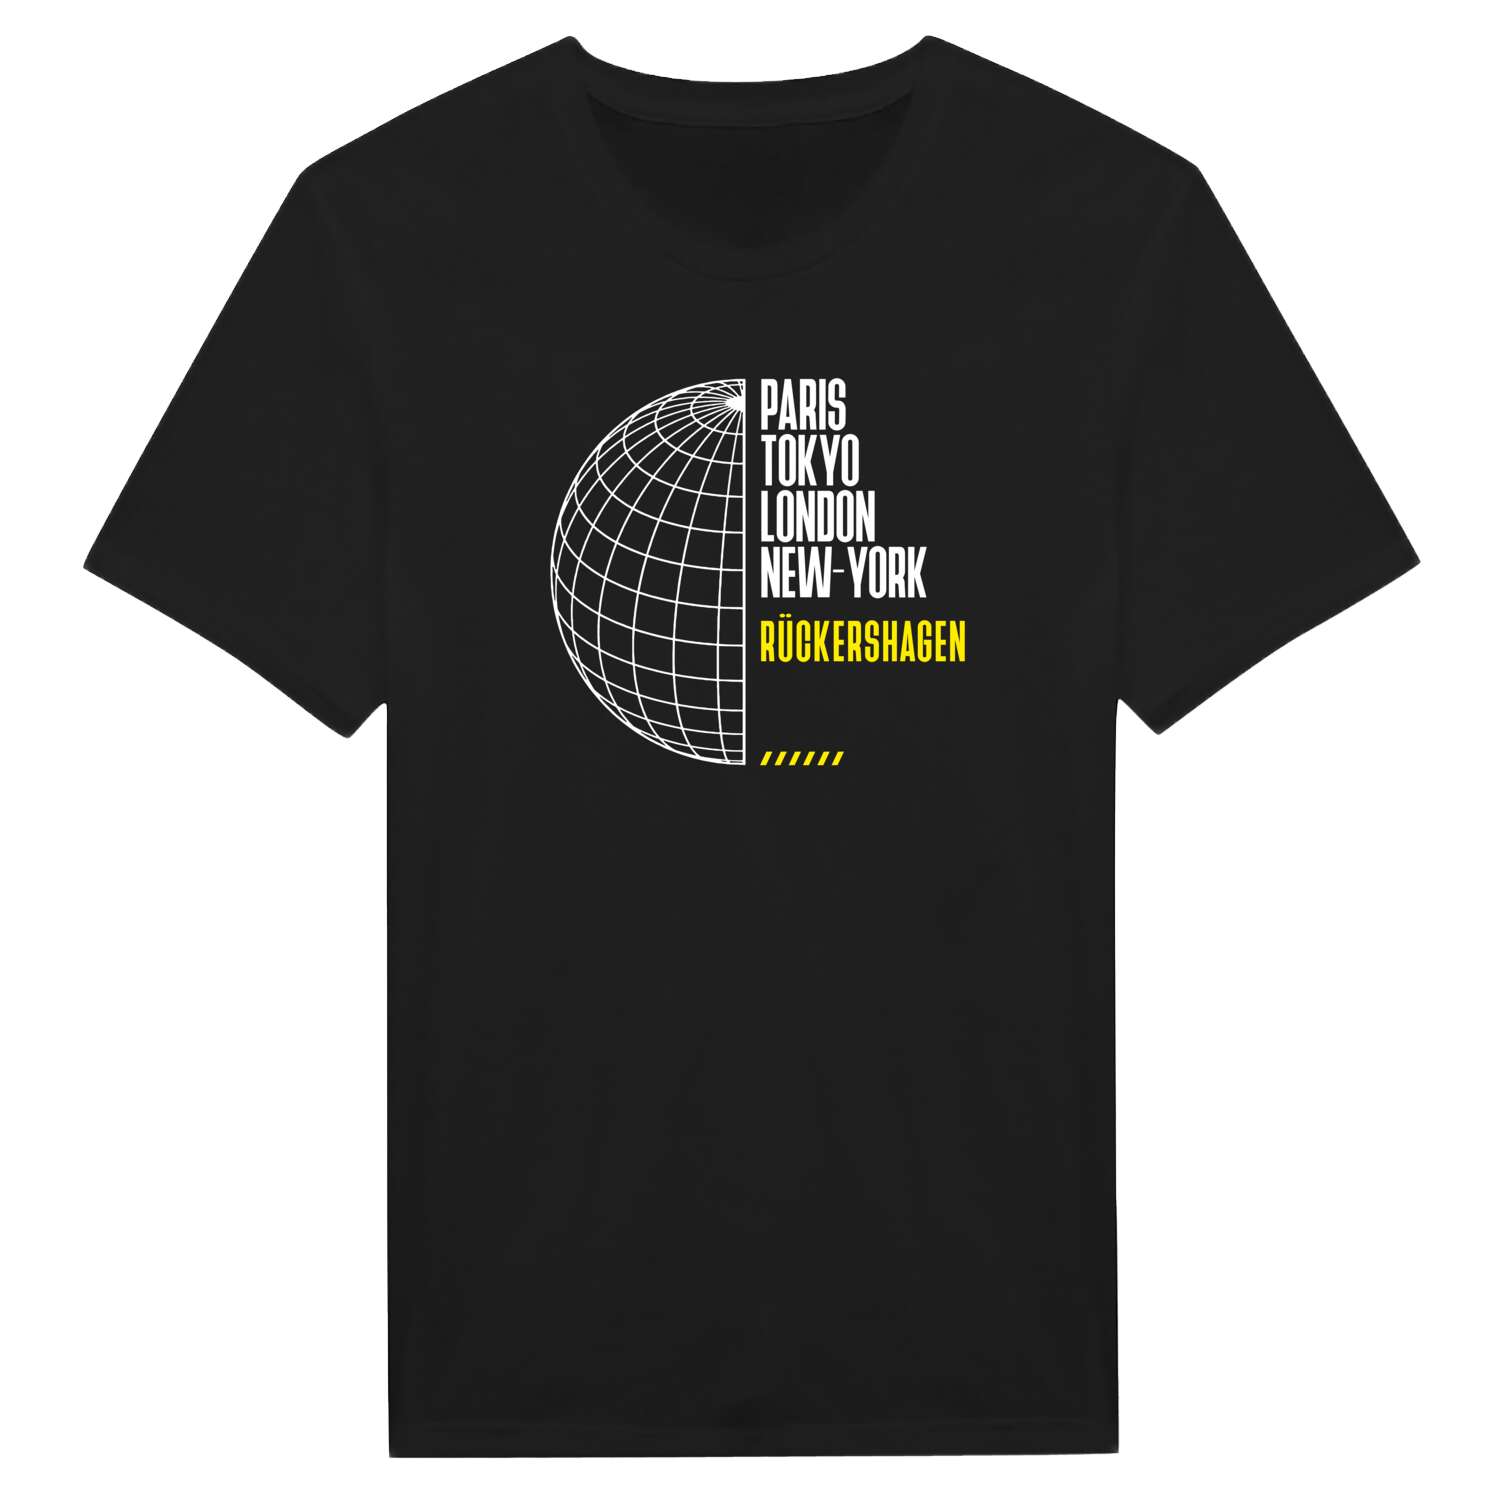 Rückershagen T-Shirt »Paris Tokyo London«